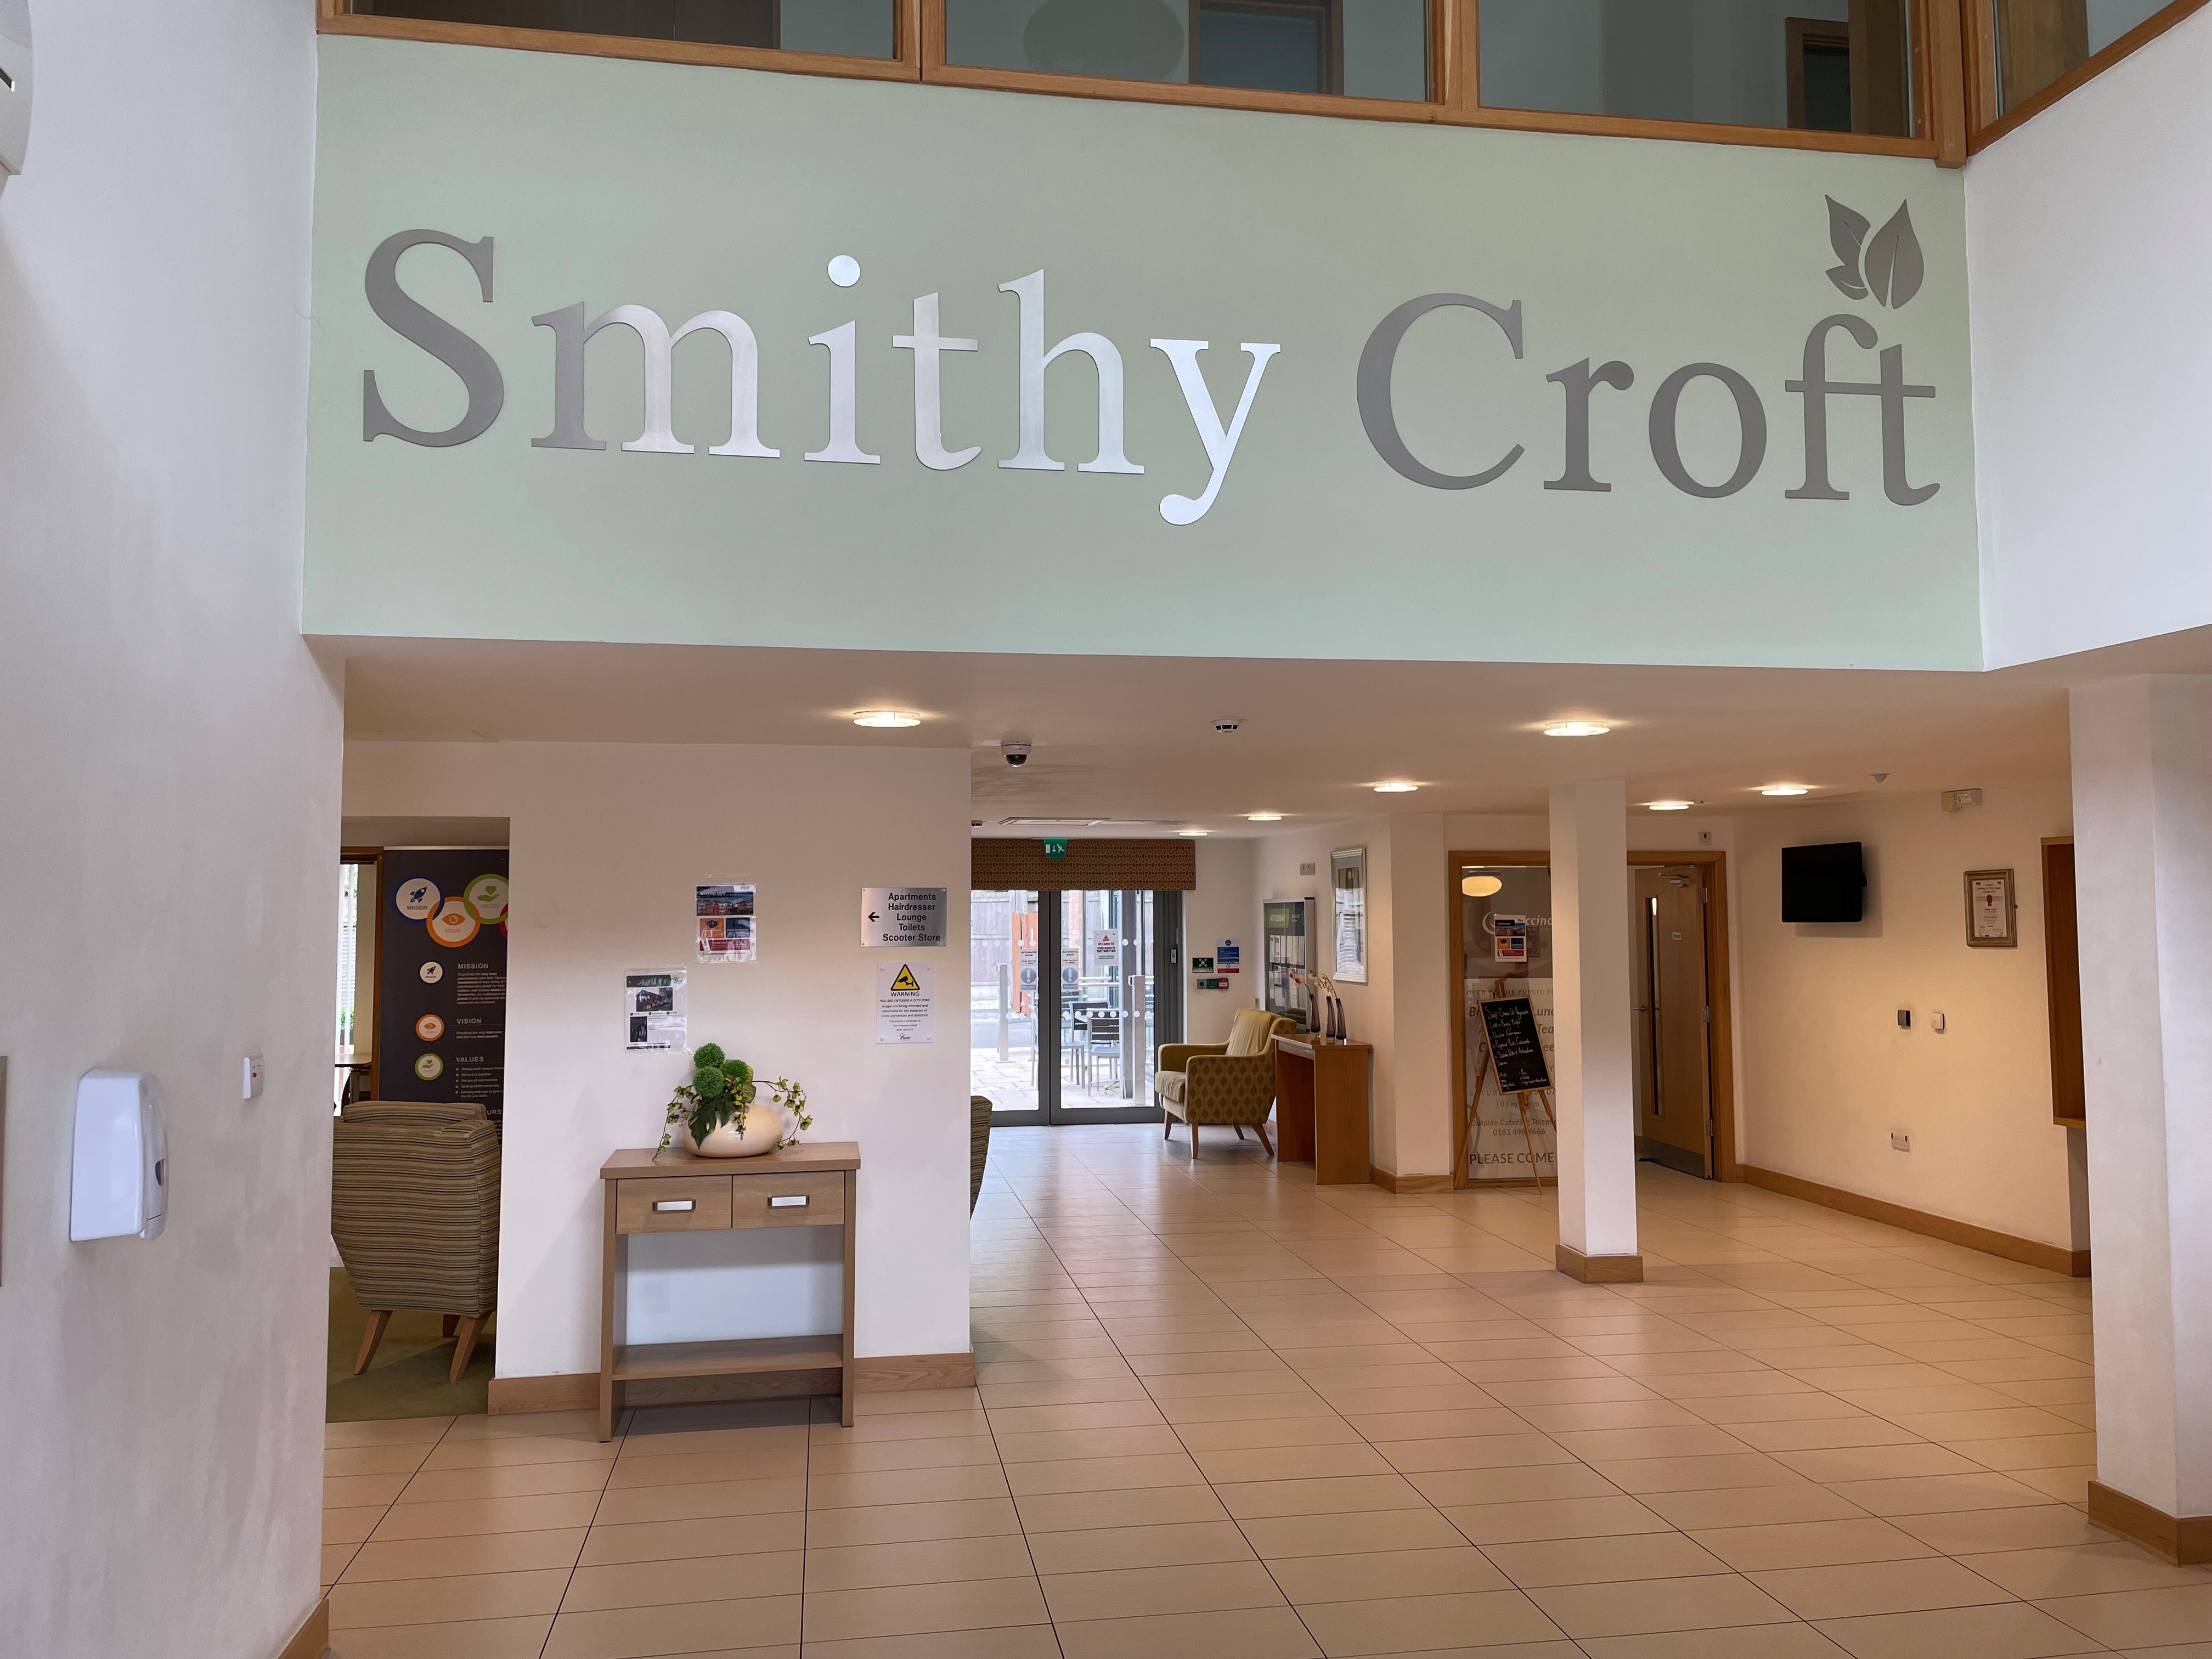 Smithy Croft Jul 22 1